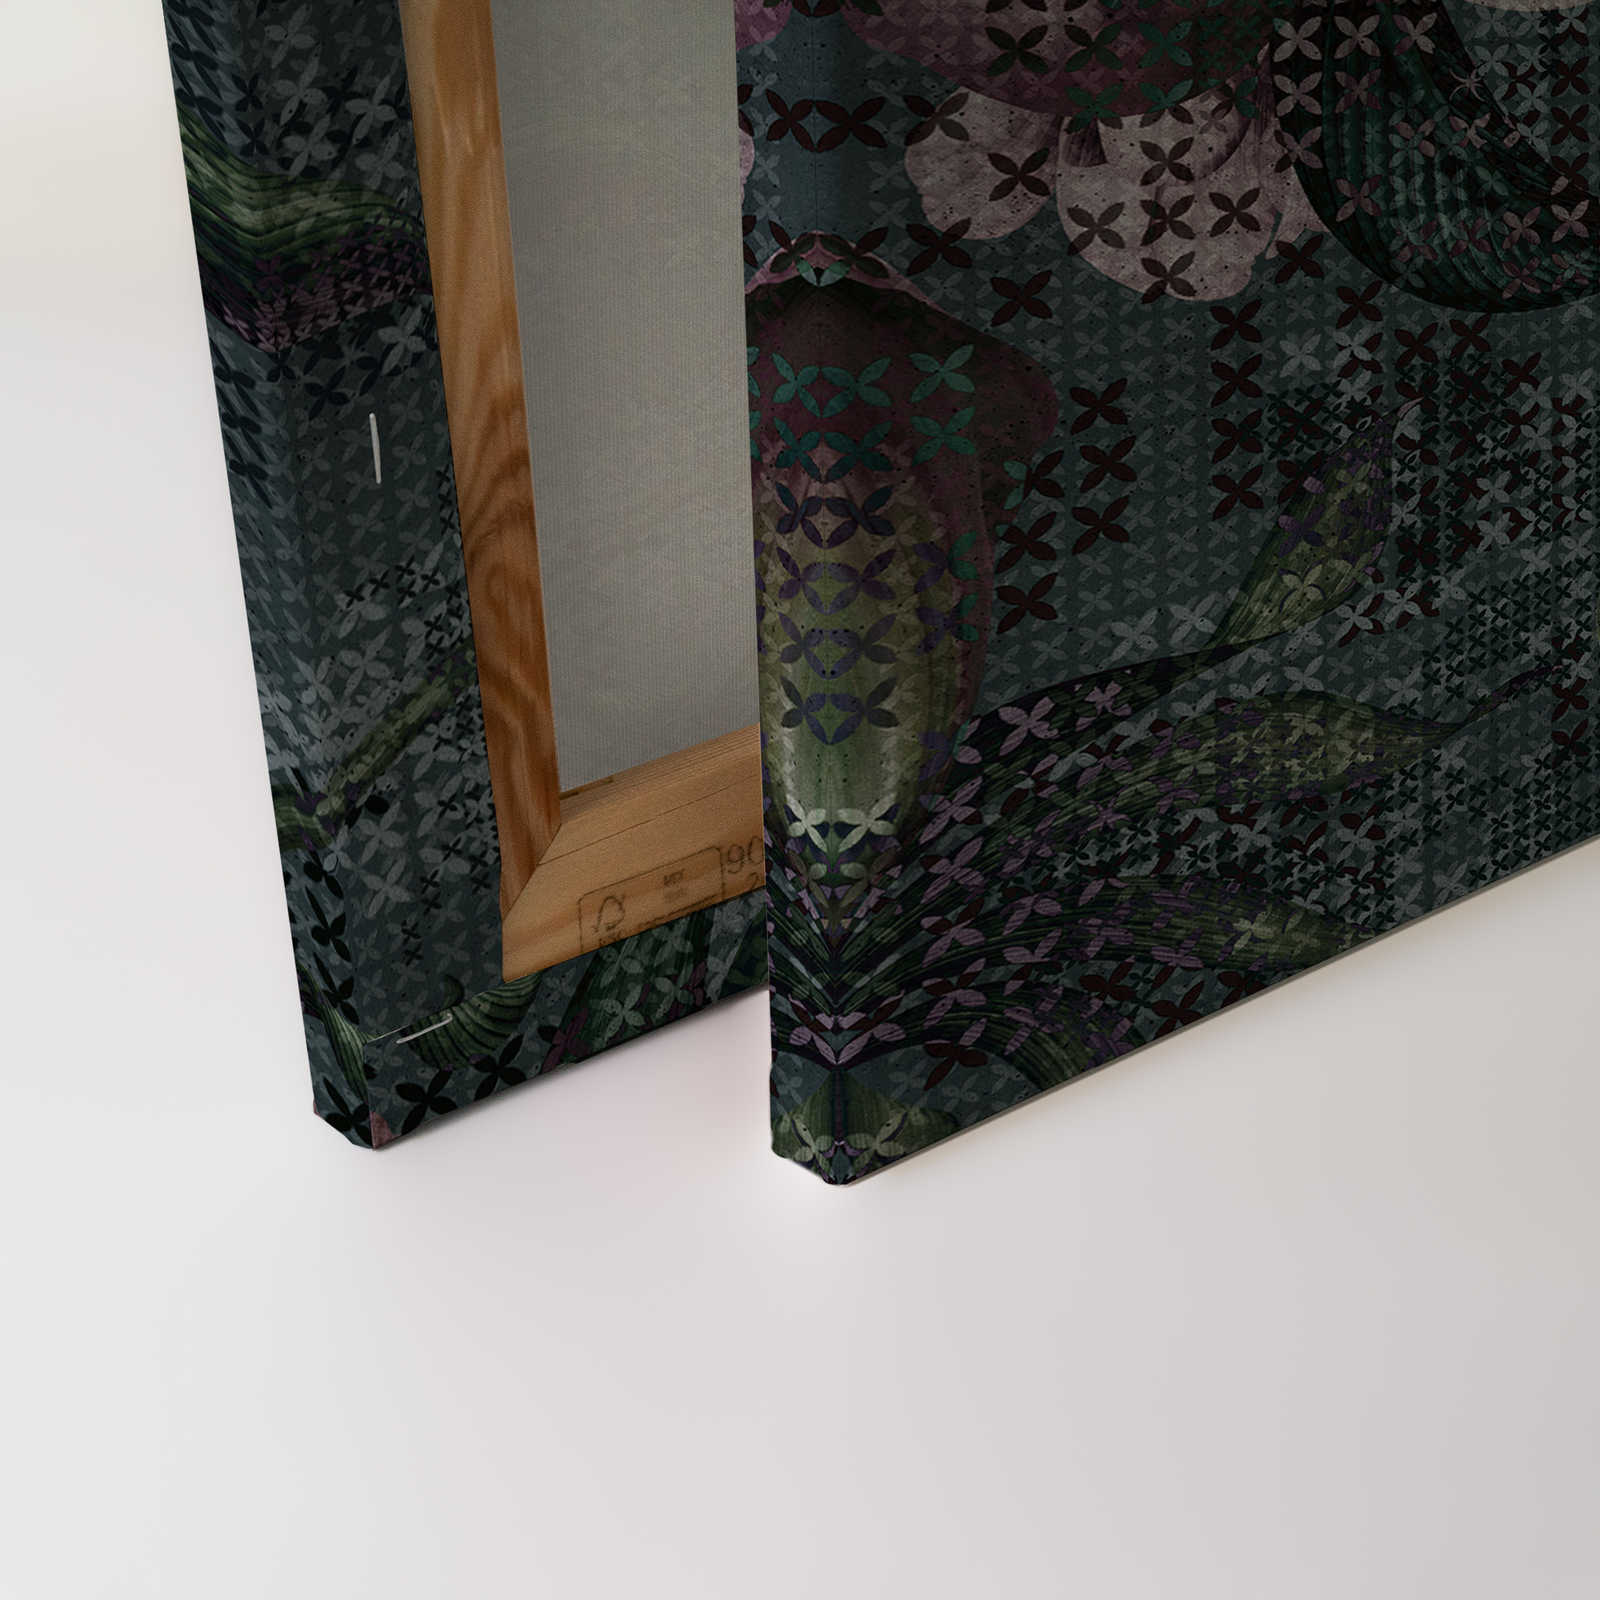             Blumen Leinwandbild Pixel Design – 1,20 m x 0,80 m
        